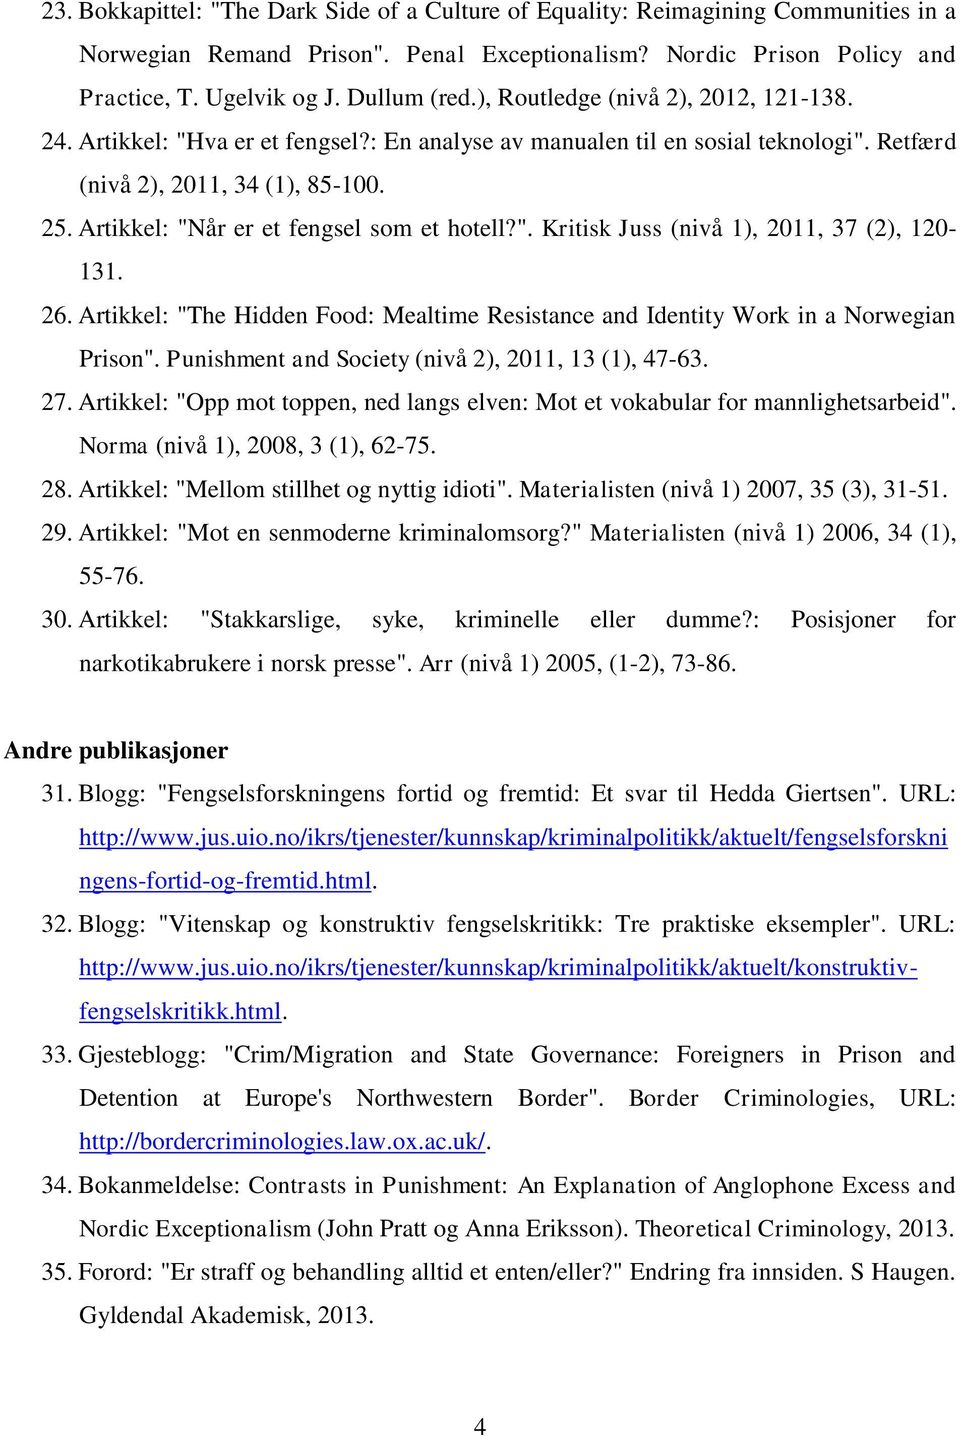 Artikkel: "Når er et fengsel som et hotell?". Kritisk Juss (nivå 1), 2011, 37 (2), 120-131. 26. Artikkel: "The Hidden Food: Mealtime Resistance and Identity Work in a Norwegian Prison".